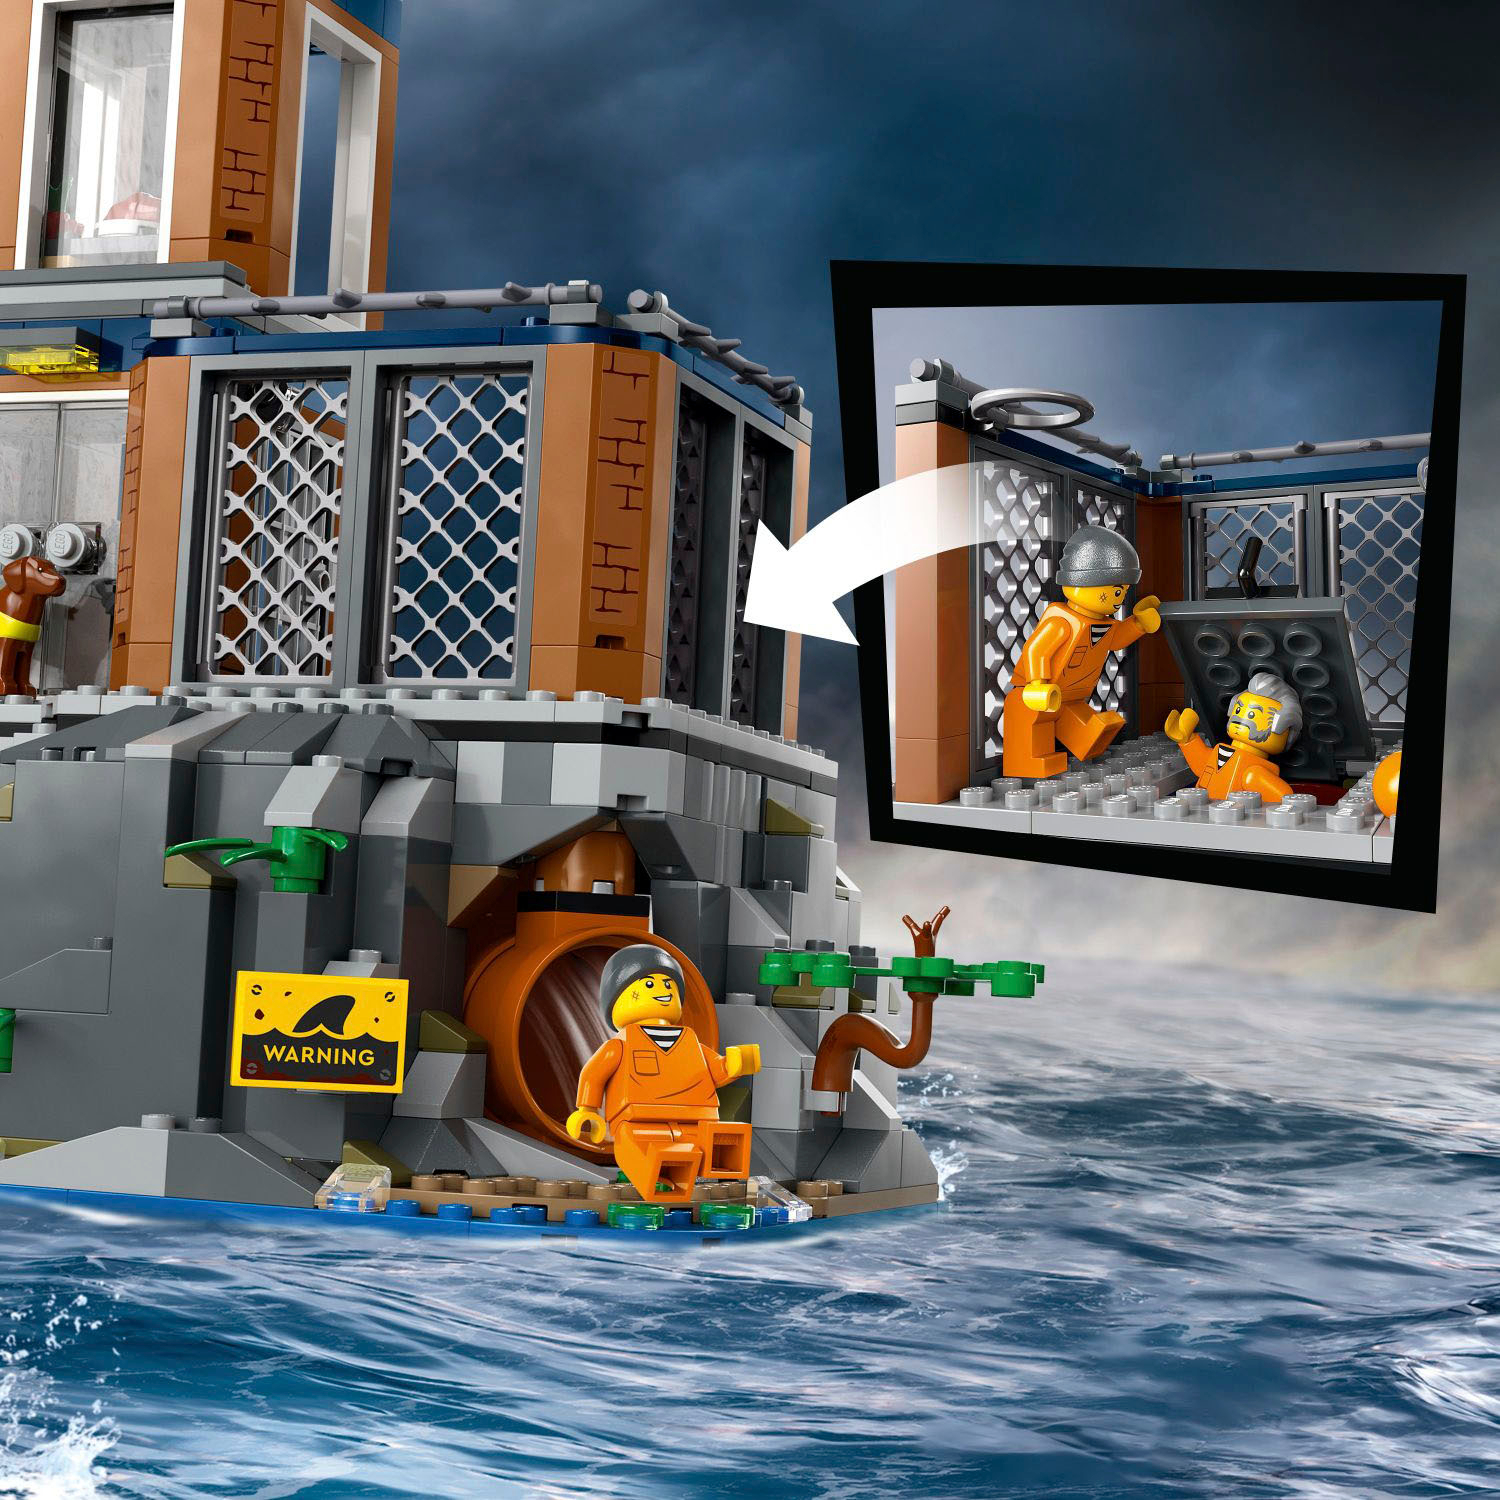 LEGO 60419 La prison de la police en haute mer